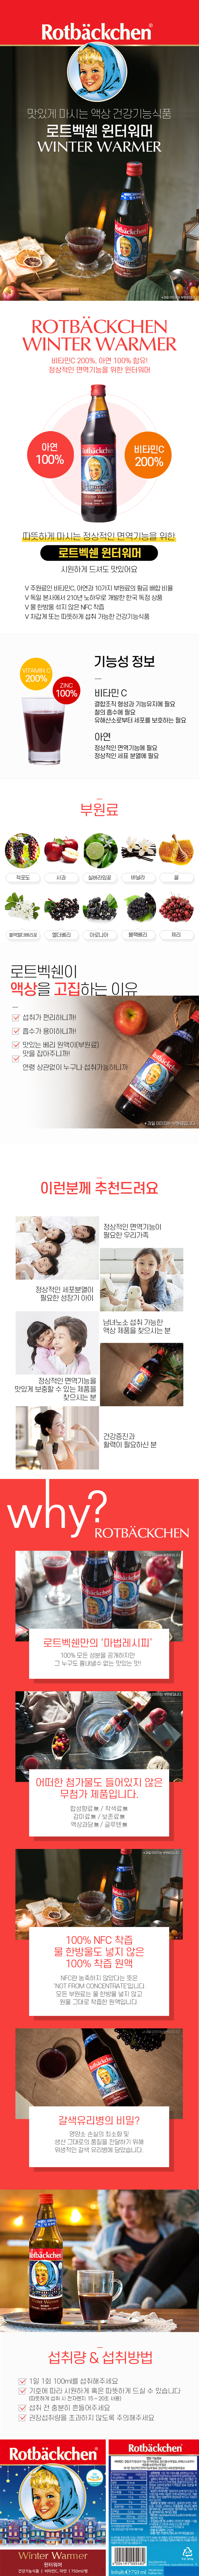 로트벡쉔 윈터워머 2병 - 비타민C 아연,벵쇼와 비타민의 만남